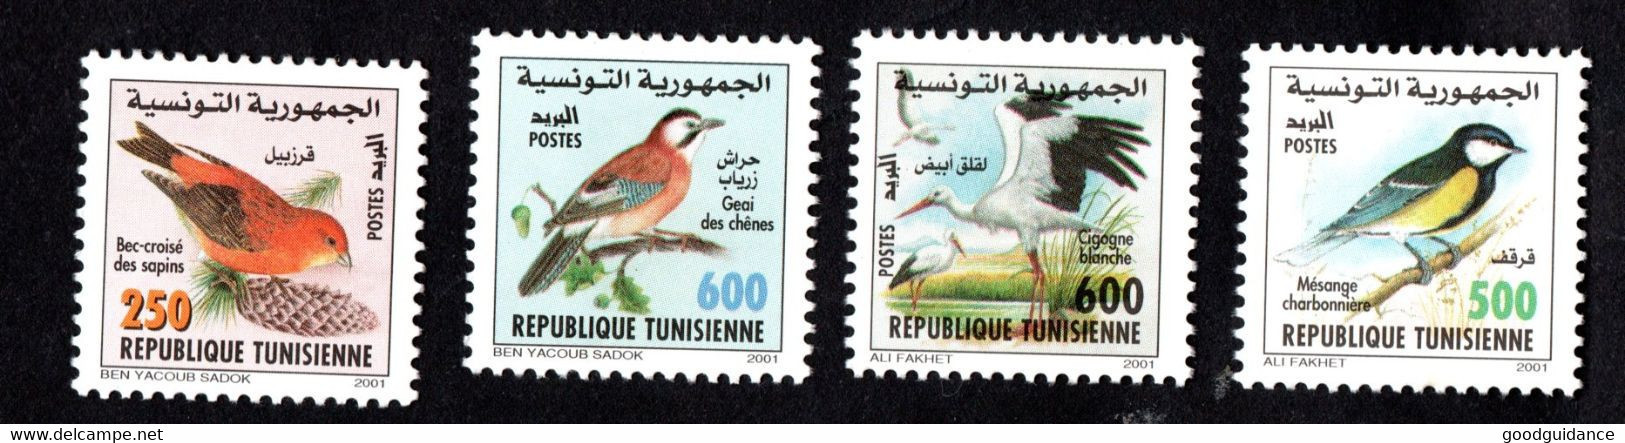 2001-Tunisie-Oiseaux De Tunisie-Cigogne Blanche-Bec-croisé– Geai Des Chênes-Mésange-Charbonnière– Série Compl.4v.MNH** - Mussen